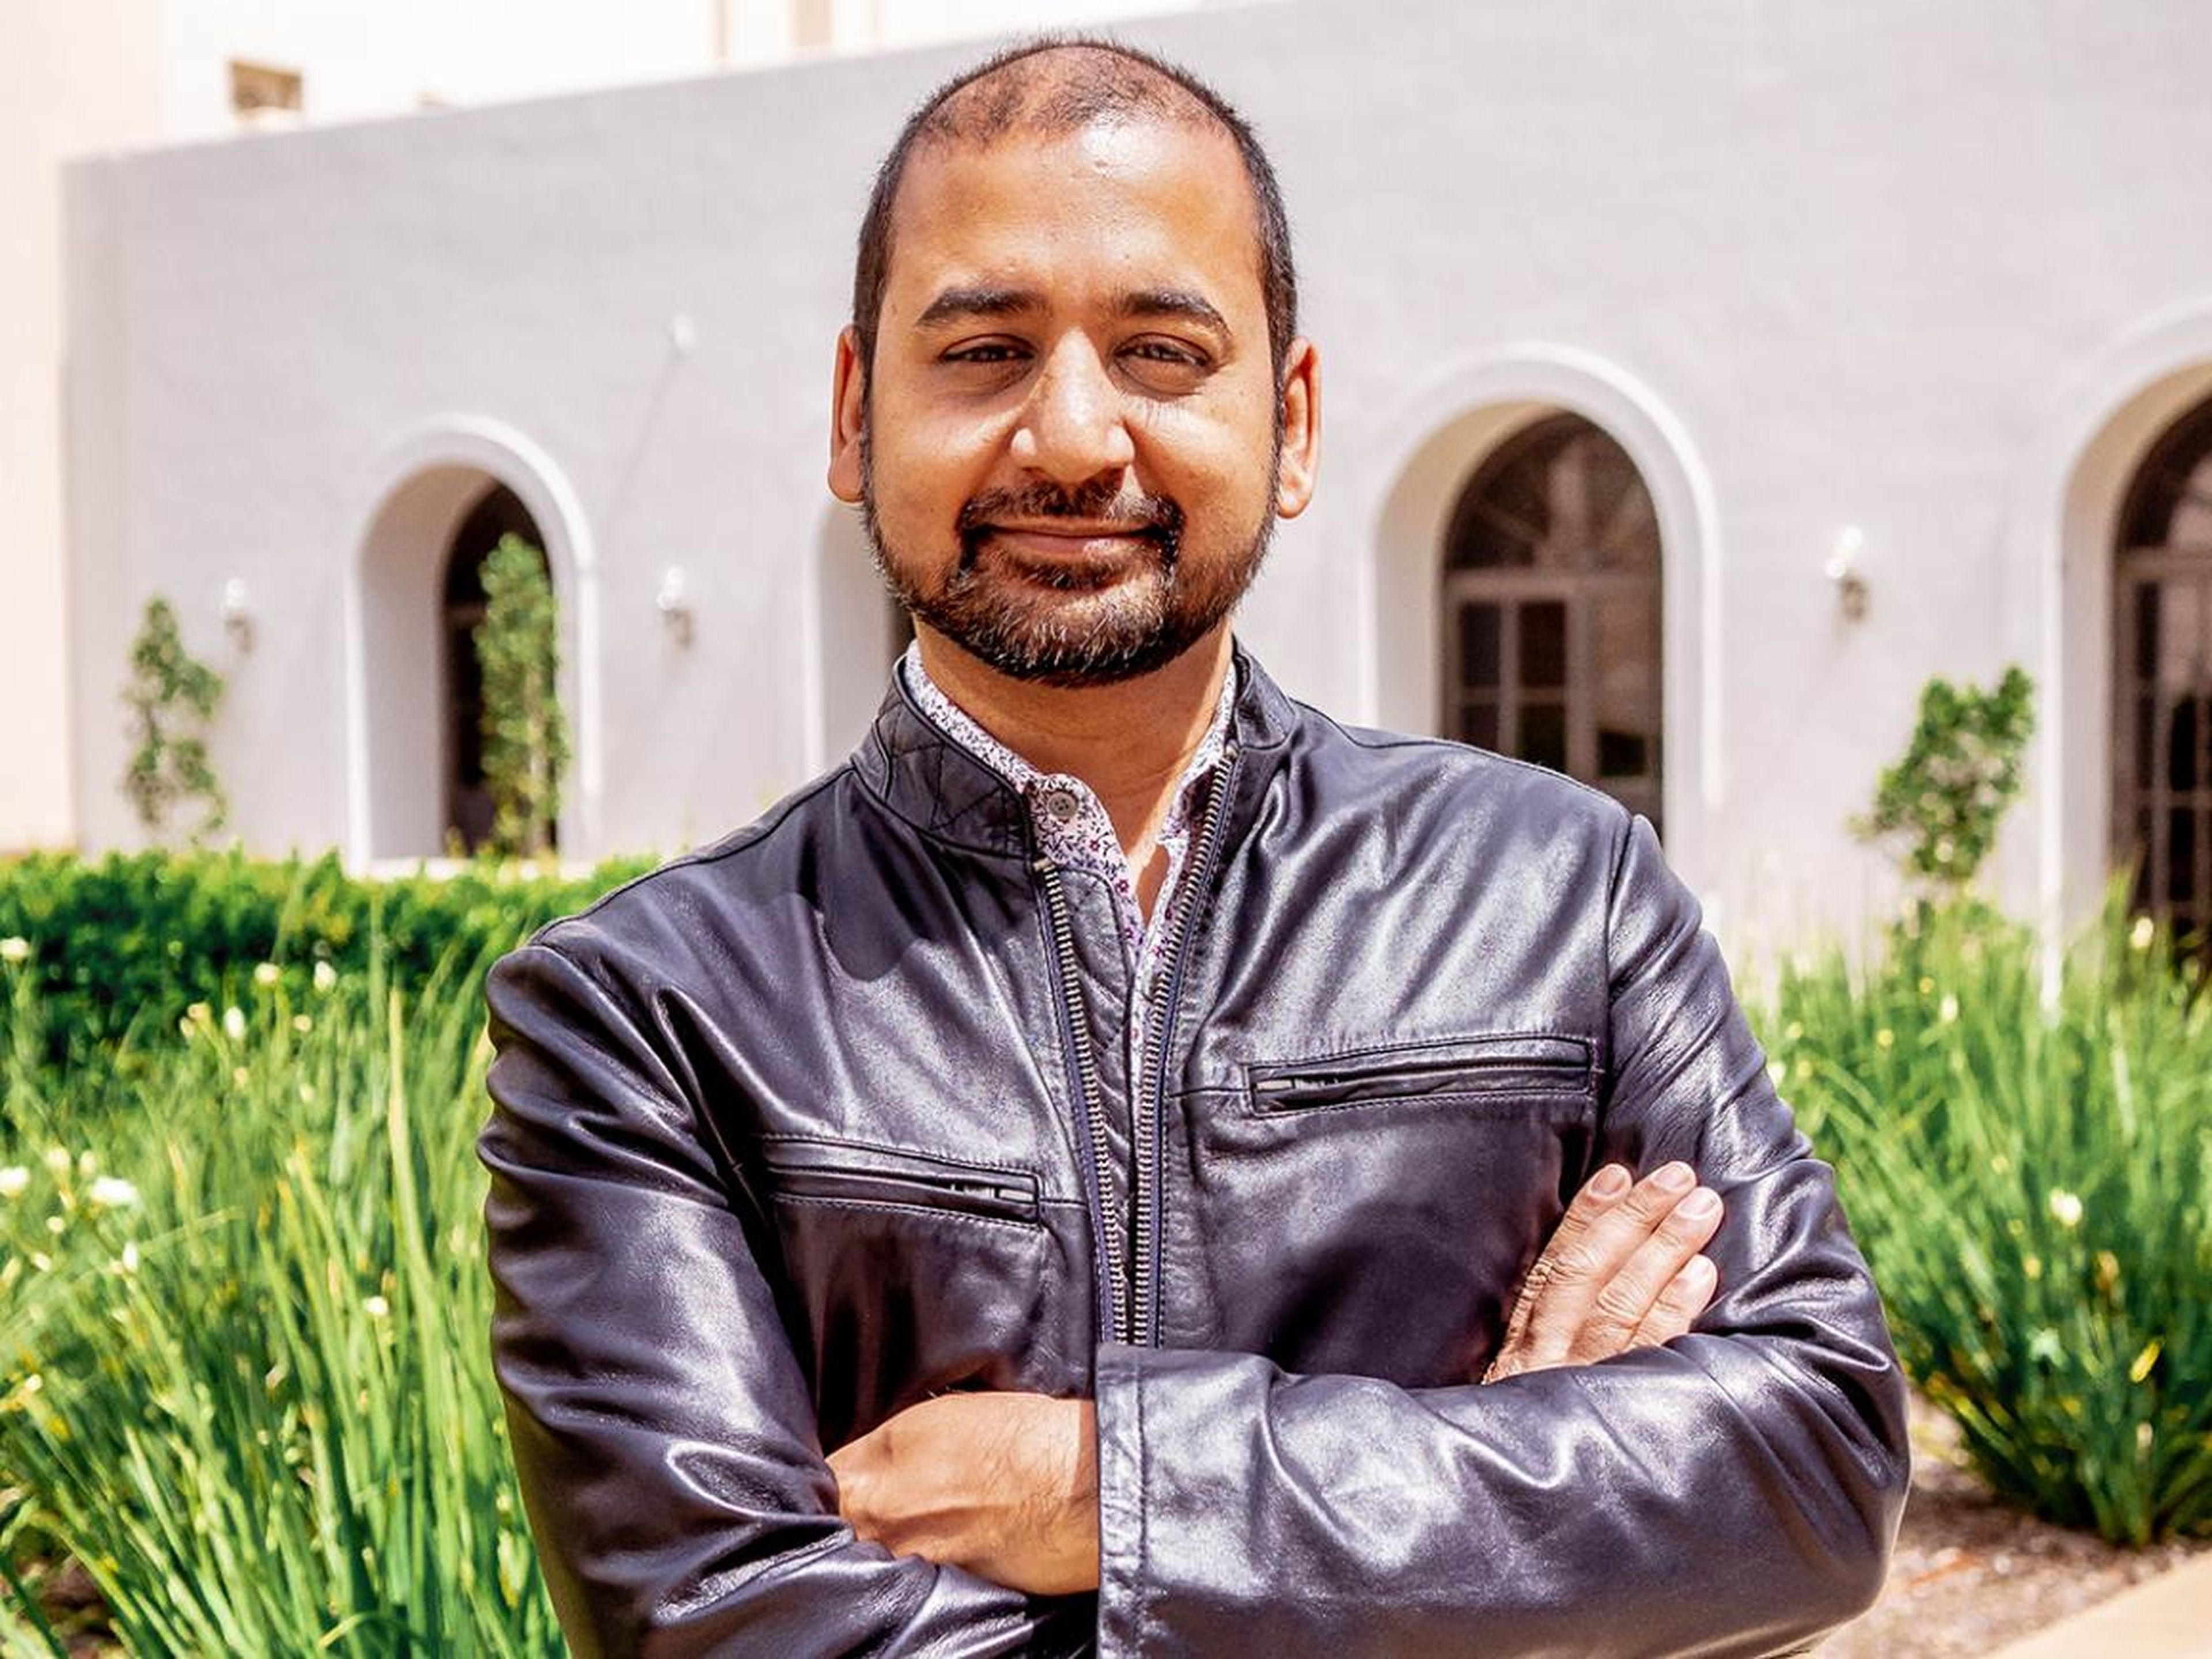 El CEO de Glitch, Anil Dash, hace que sea fácil (y divertido) escribir software